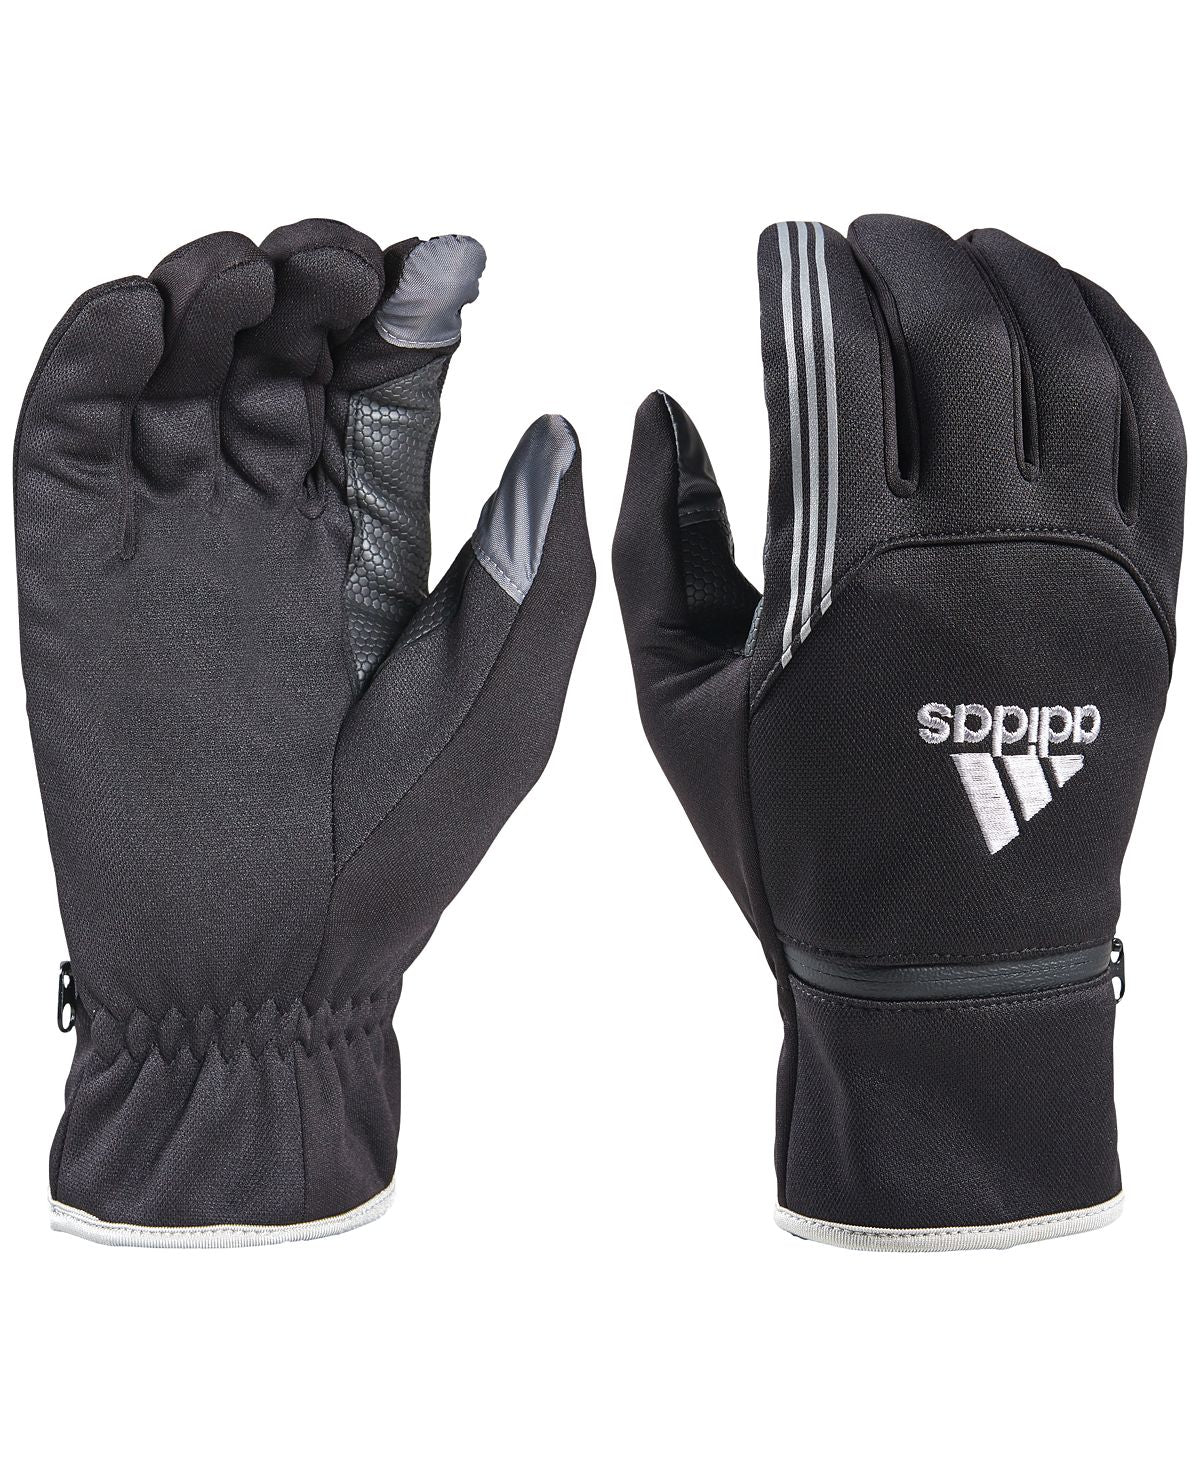 Adidas Awp Voyager Gloves Black/White